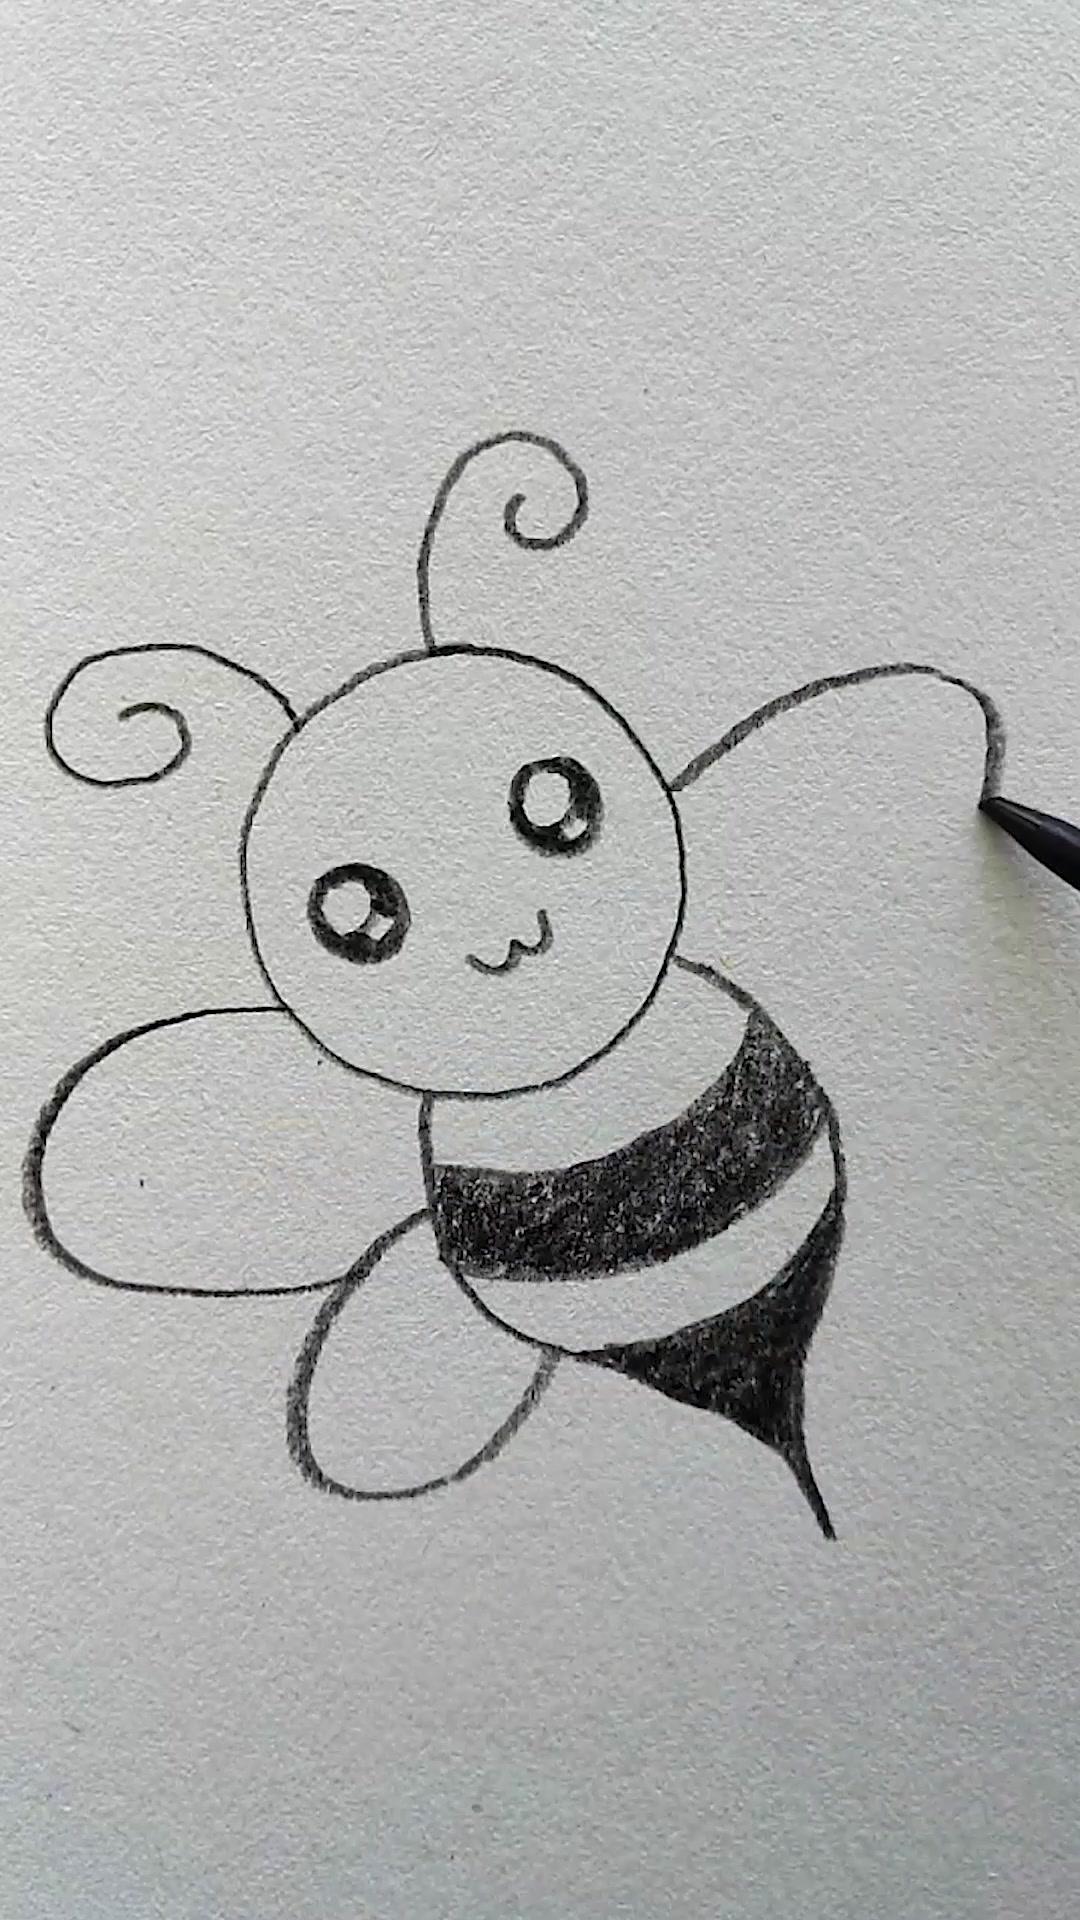 好久不见~画可爱的小蜜蜂,只用两个3和一个圆,手残党一学就会,你学会